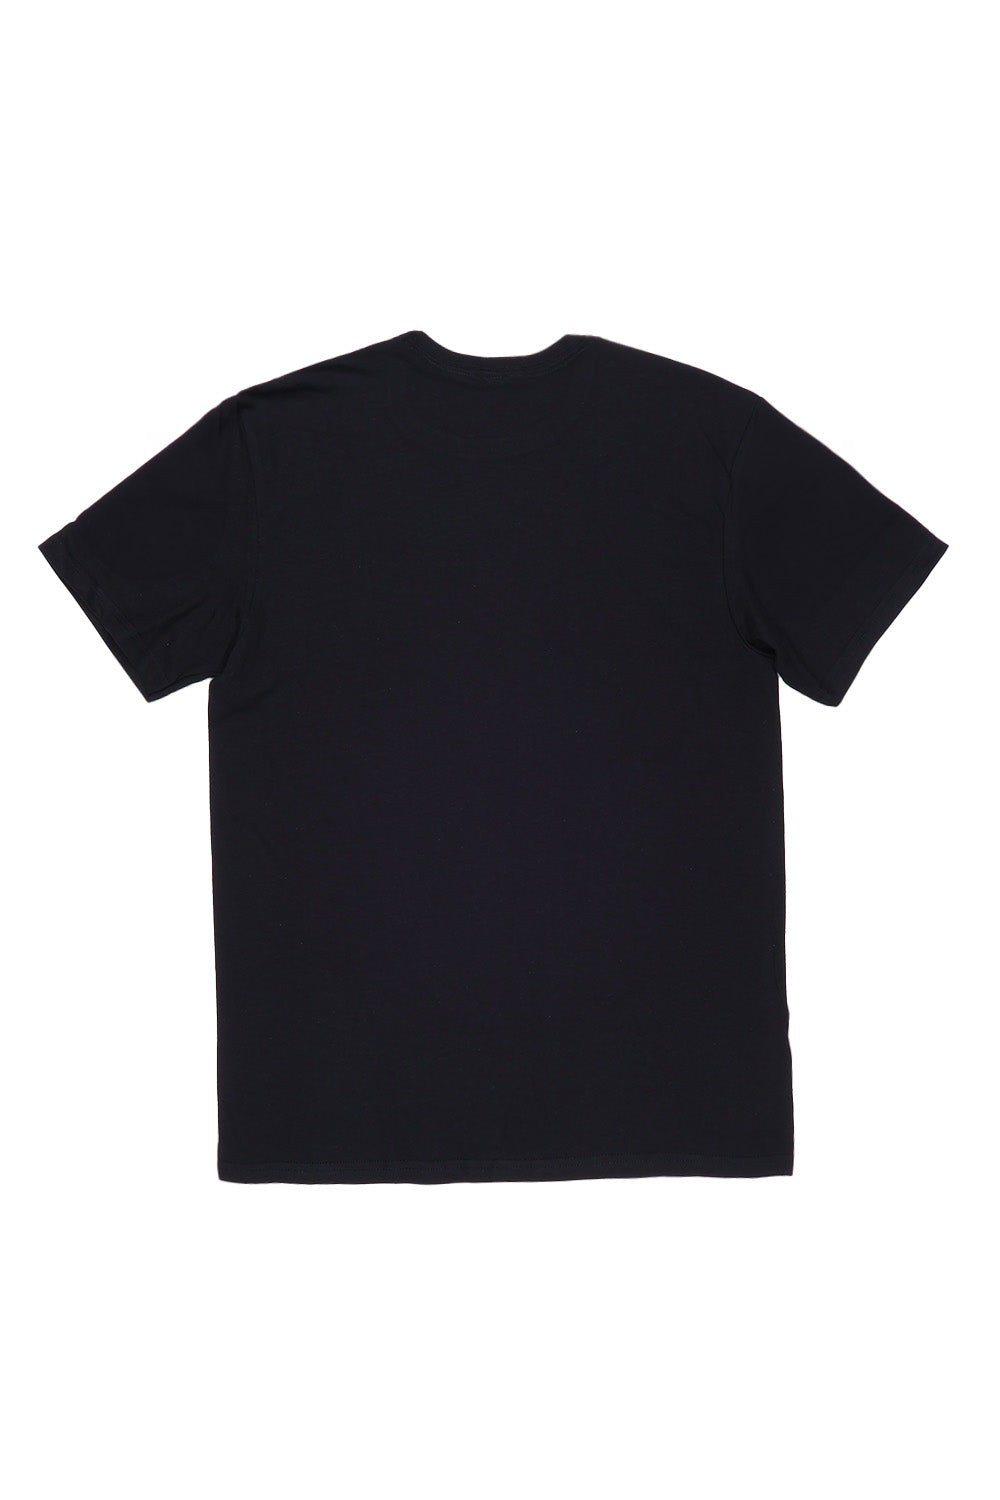 Cowgirl T-Shirt in Black (Custom Packs)